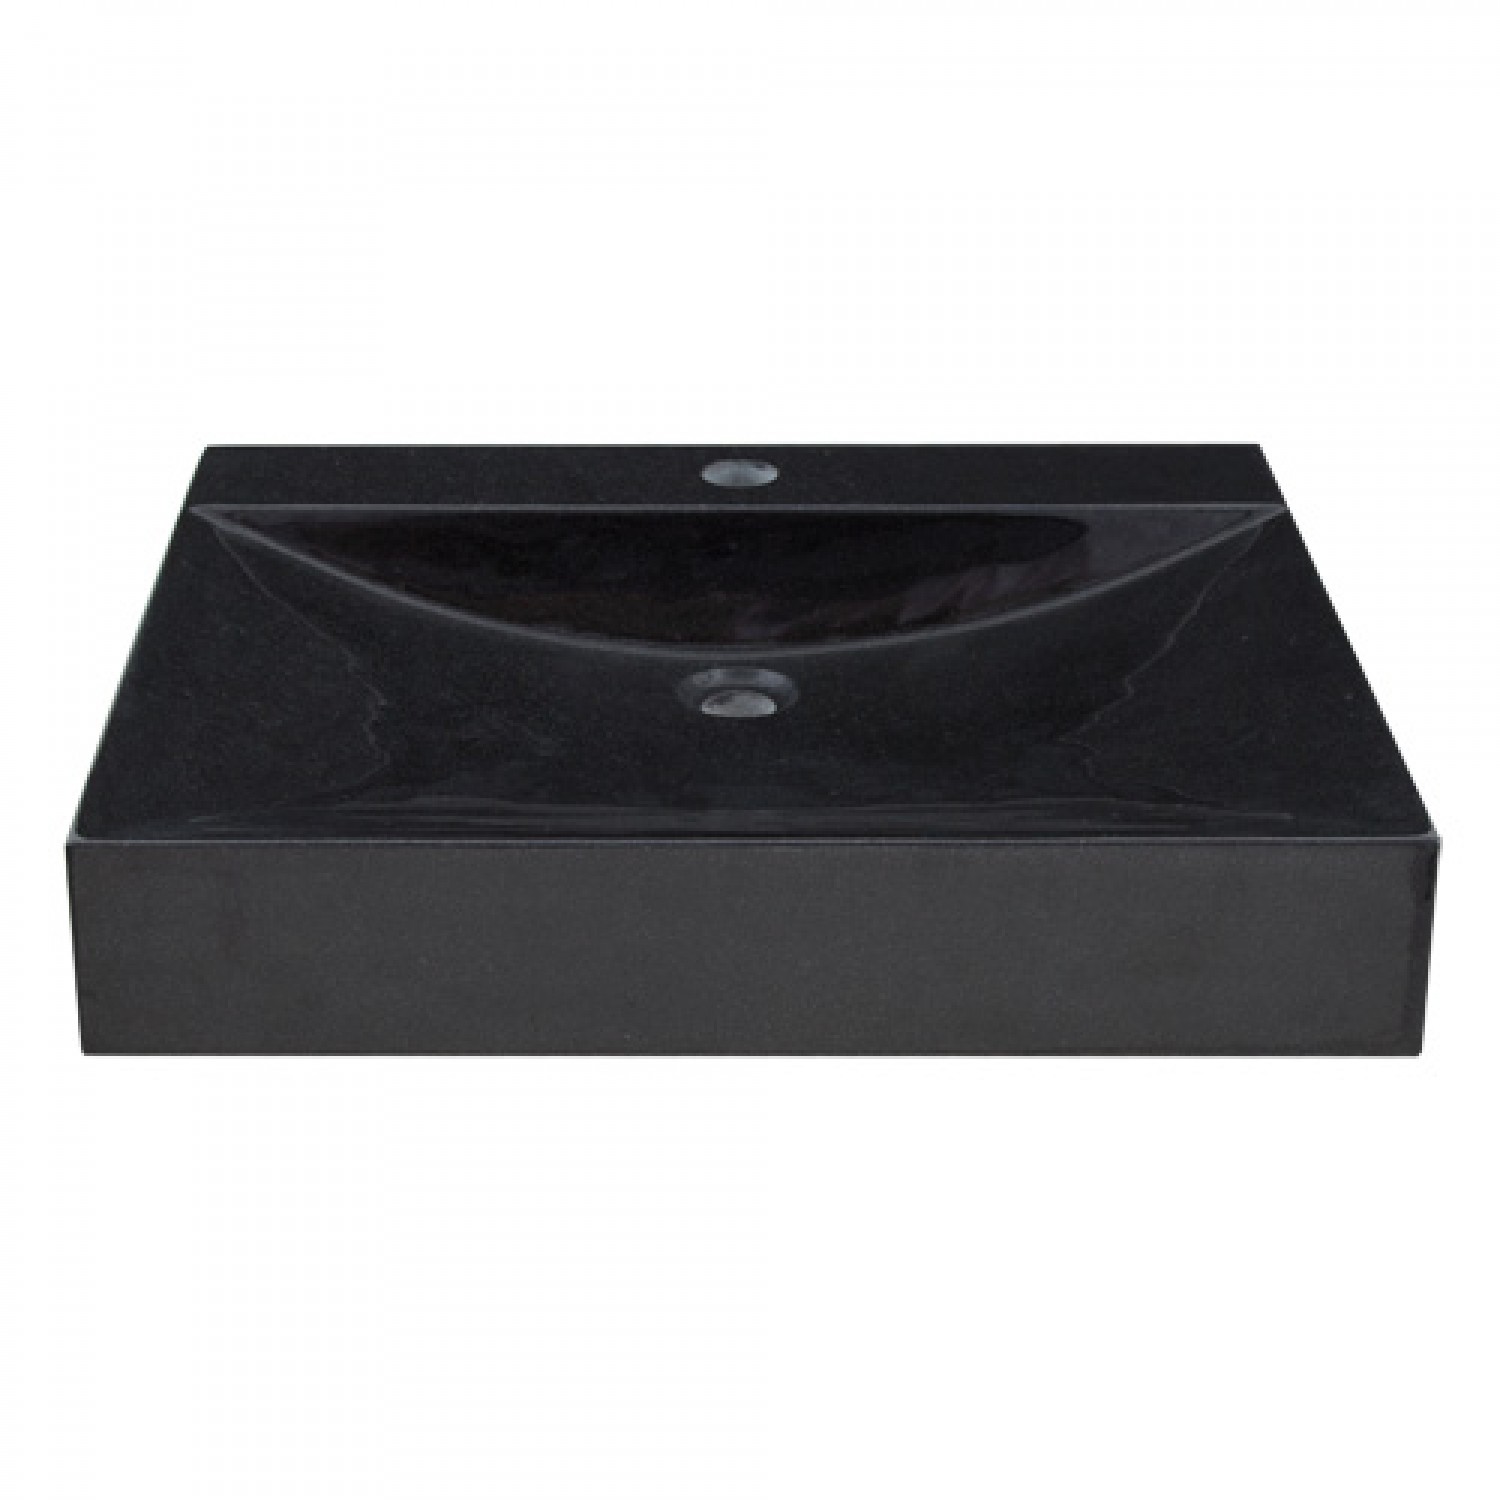 Rectangular Black Granite Vessel Sink with Polished Exterior | Natural ...